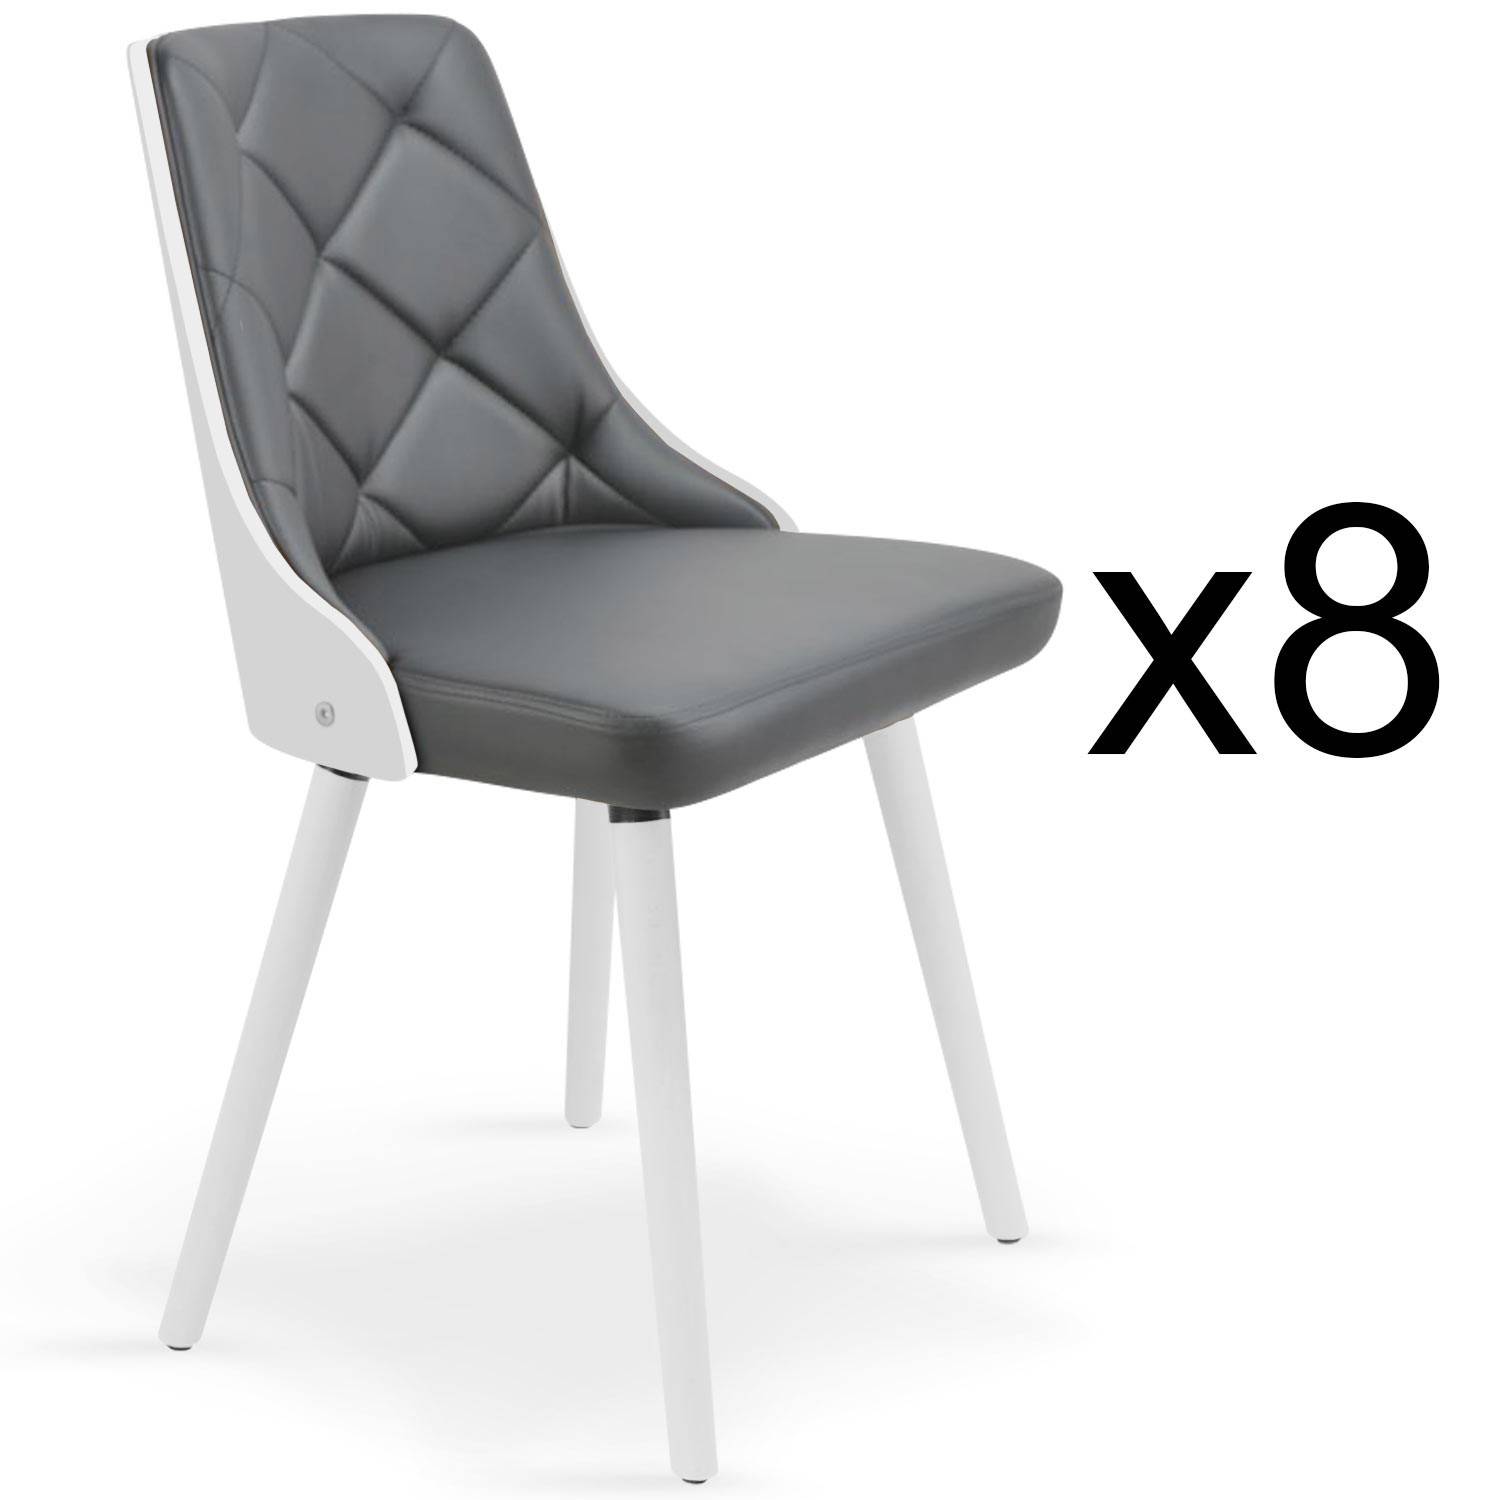 Lote de 8 sillas escandinavas Lalix, blancas y grises